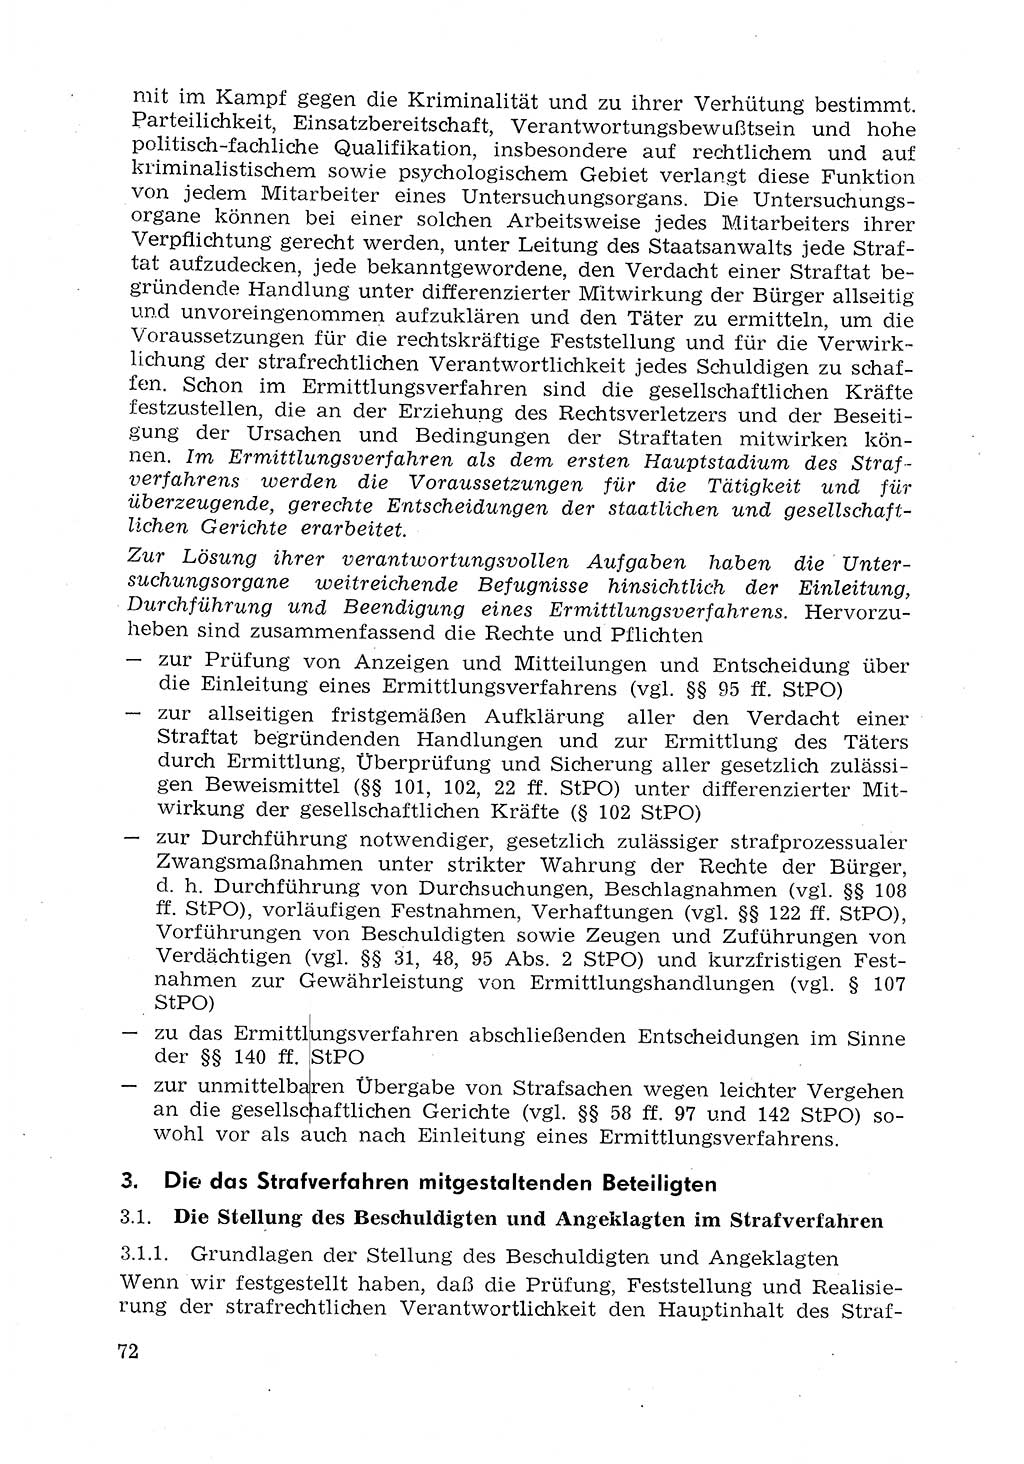 Strafprozeßrecht der DDR (Deutsche Demokratische Republik), Lehrmaterial 1969, Seite 72 (Strafprozeßr. DDR Lehrmat. 1969, S. 72)